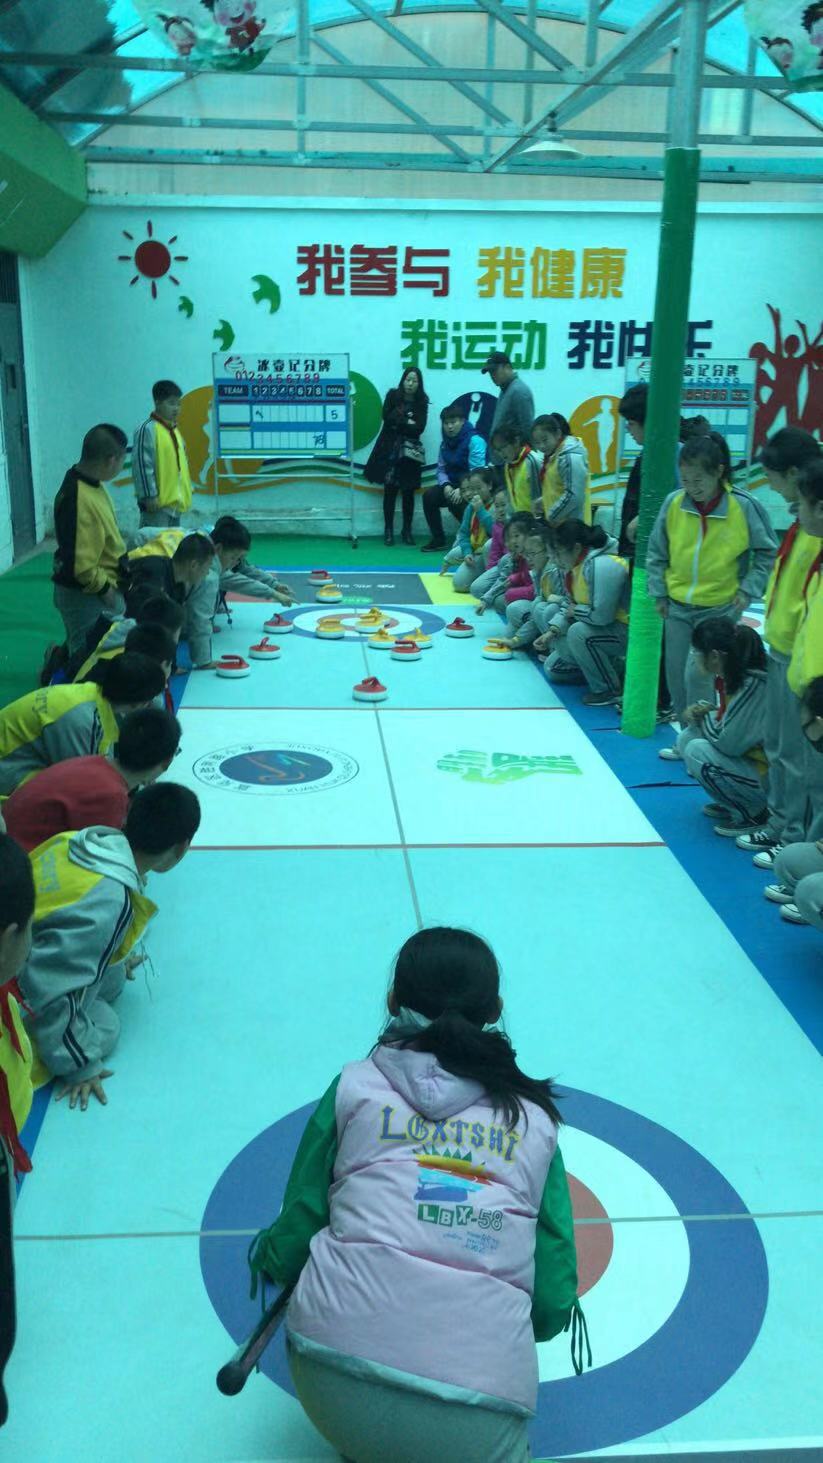 北京便携式地板冰壶生产厂家 地板冰壶设备 冰壶馆建设厂家